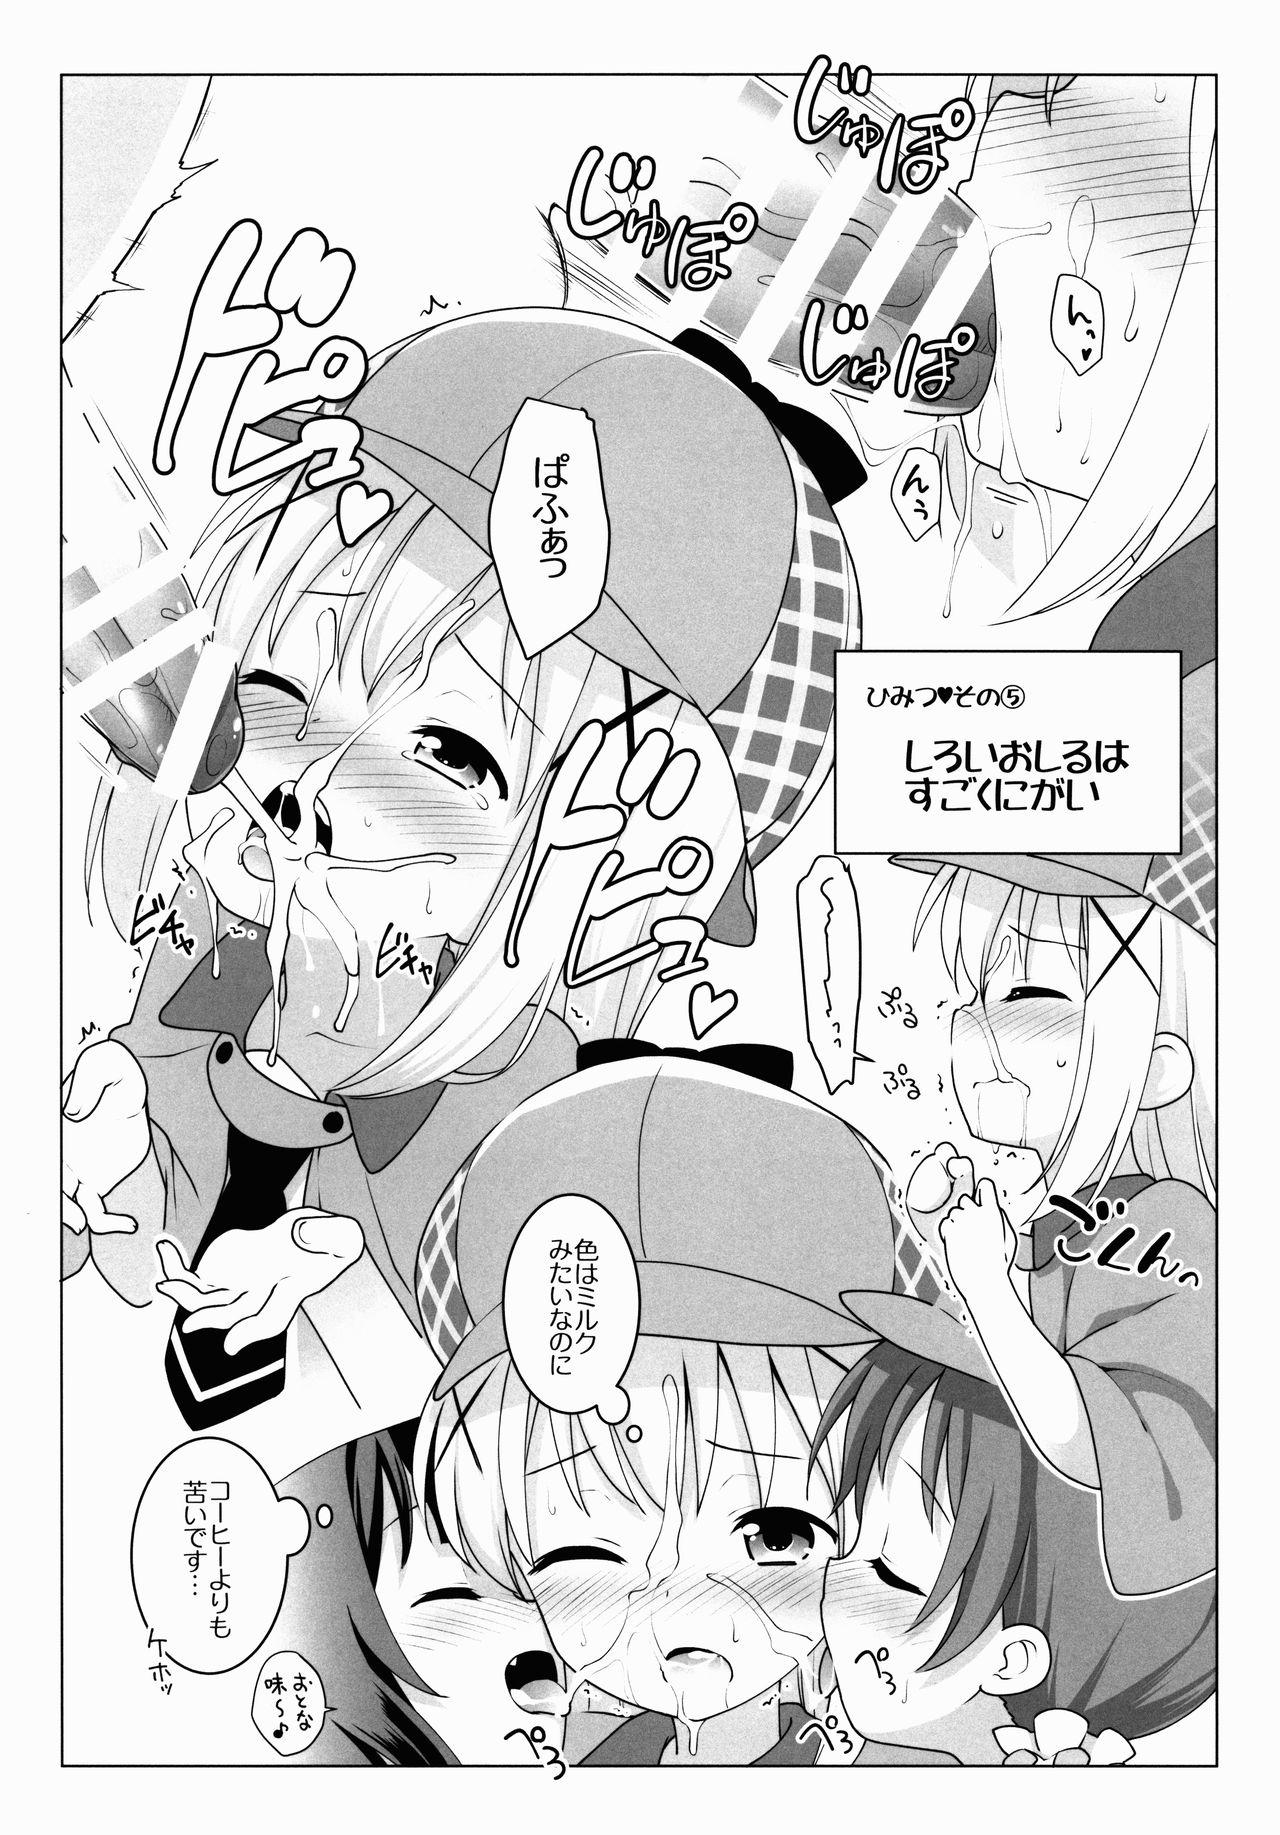 Insane Porn Chimahame Tanteidan Ochinchin Chousa Nisshi - Gochuumon wa usagi desu ka Groupfuck - Page 4